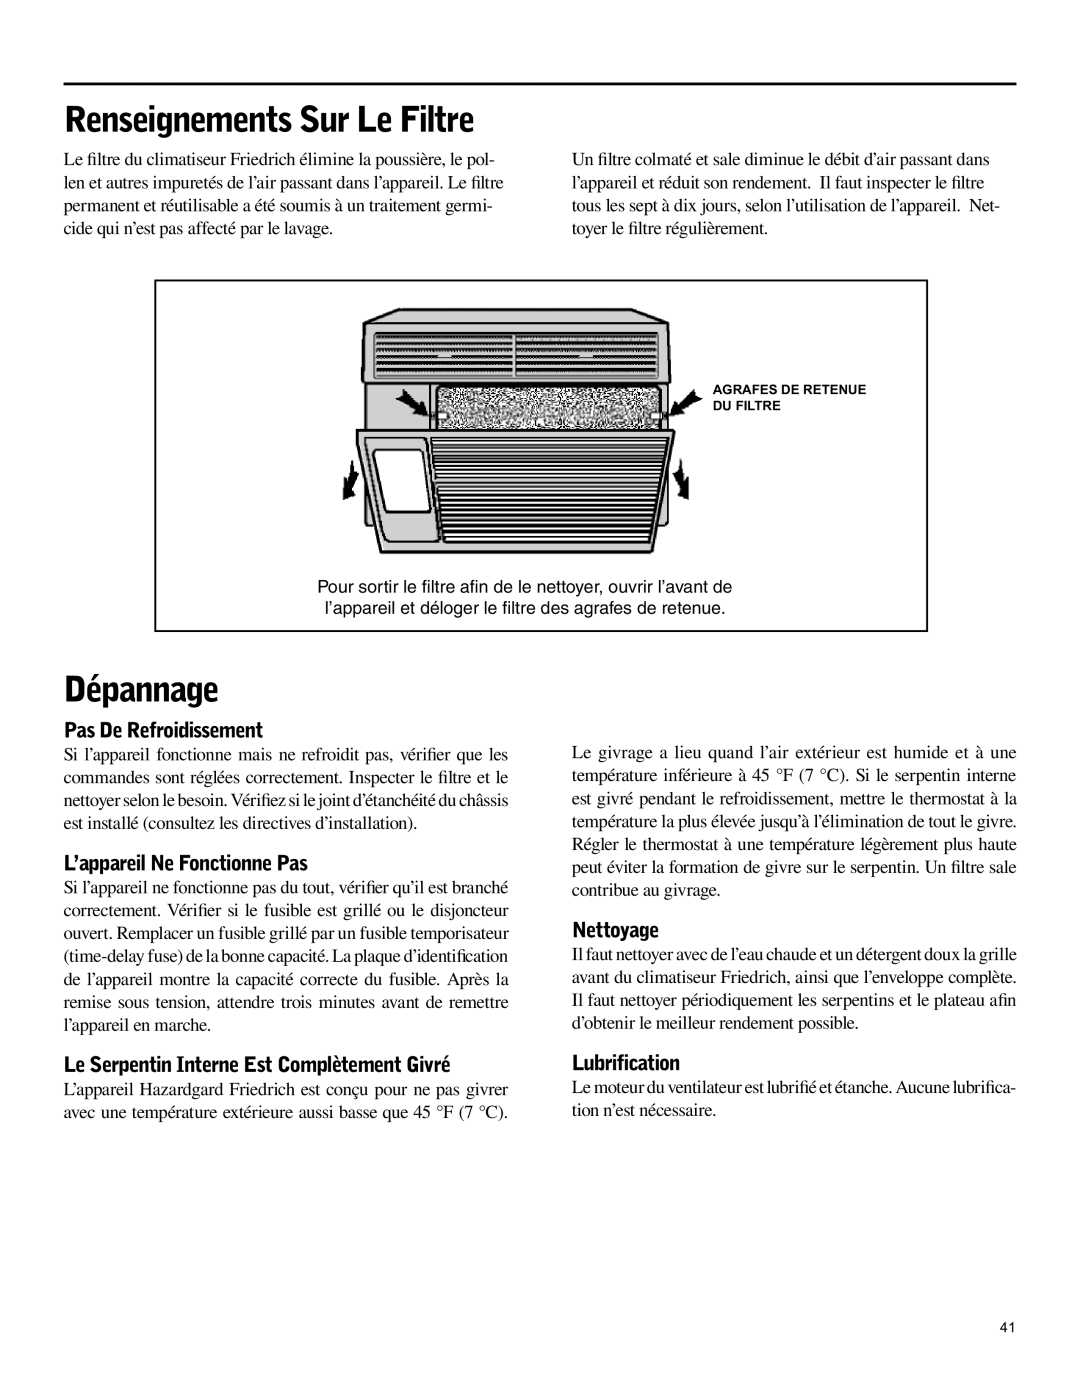 Friedrich SH15 operation manual Dépannage, Pas De Refroidissement, L’appareil Ne Fonctionne Pas, Nettoyage, Lubrification 